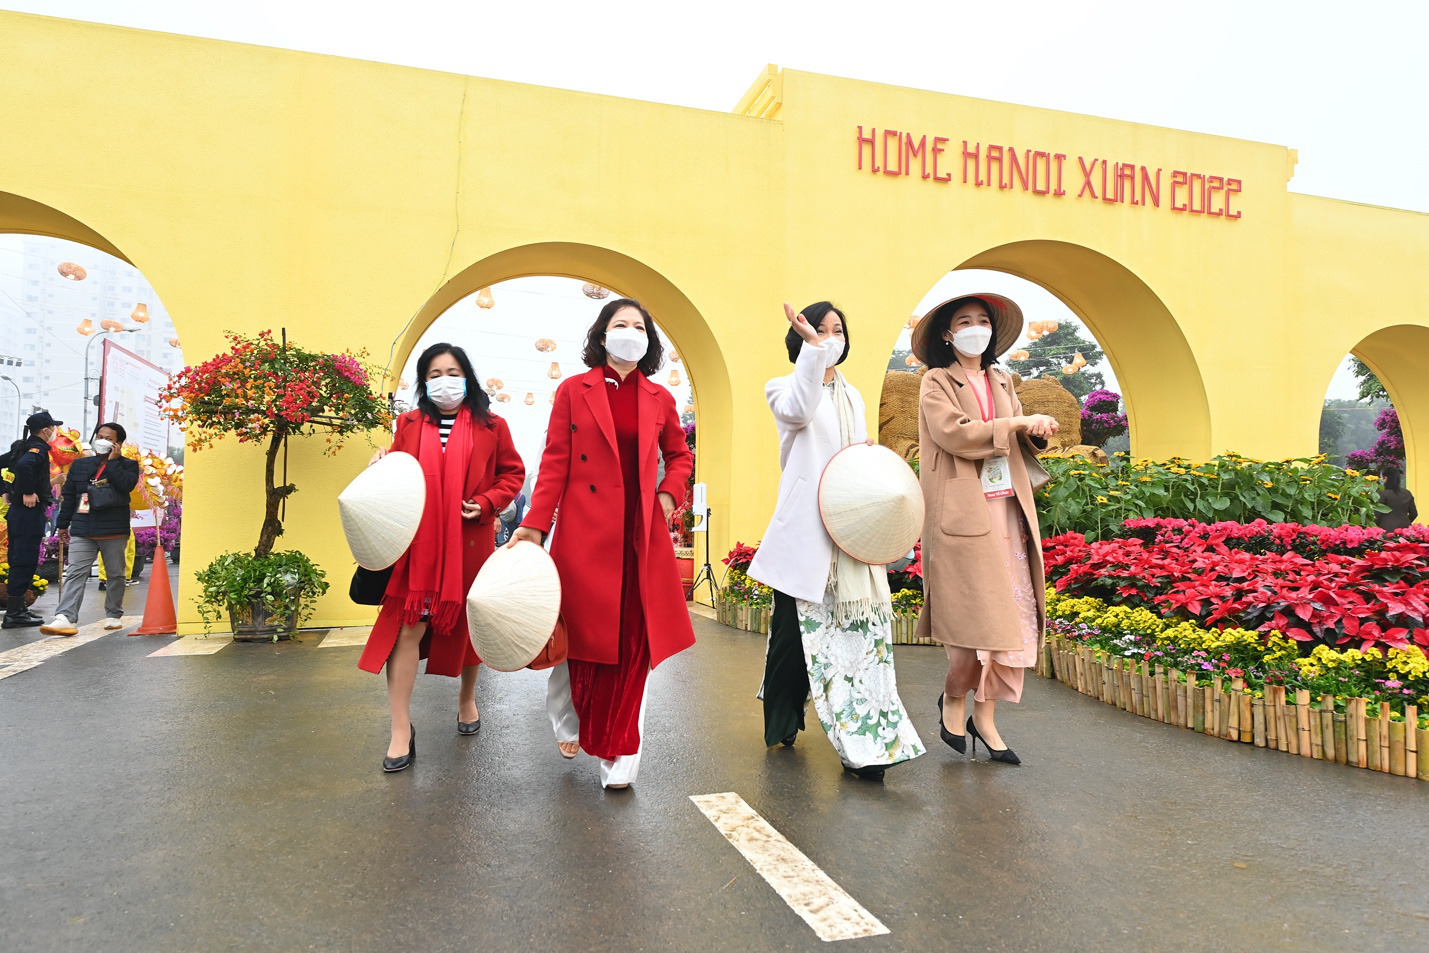 Đường hoa Home Hanoi Xuan 2022 và phố đi bộ Pont de Long Biên là điểm du xuân được yêu thích tại Hà Nội dịp Tết Nhâm Dần - Ảnh 8.